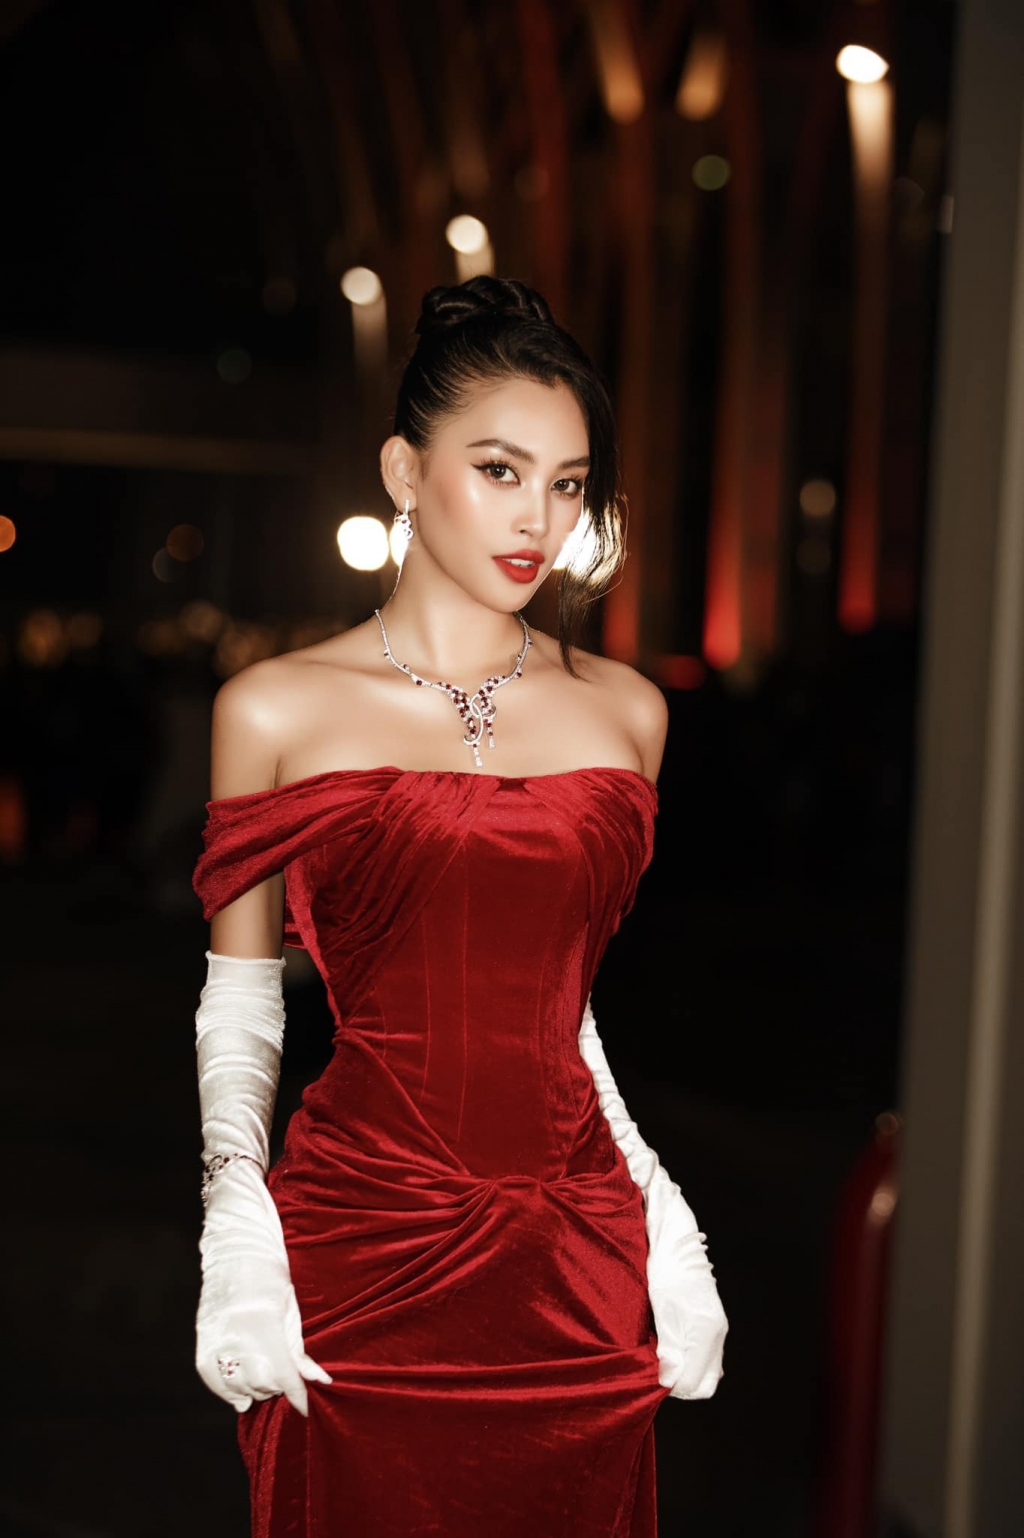 Tiểu Vy kết thúc nhiệm kỳ Hoa hậu Việt Nam 2018 vào ngày 20/11/2020 vừa qua sau khi trao lại vương miện cho người đẹp kế nhiệm là cô gái xứ Thanh Đỗ Thị Hà.